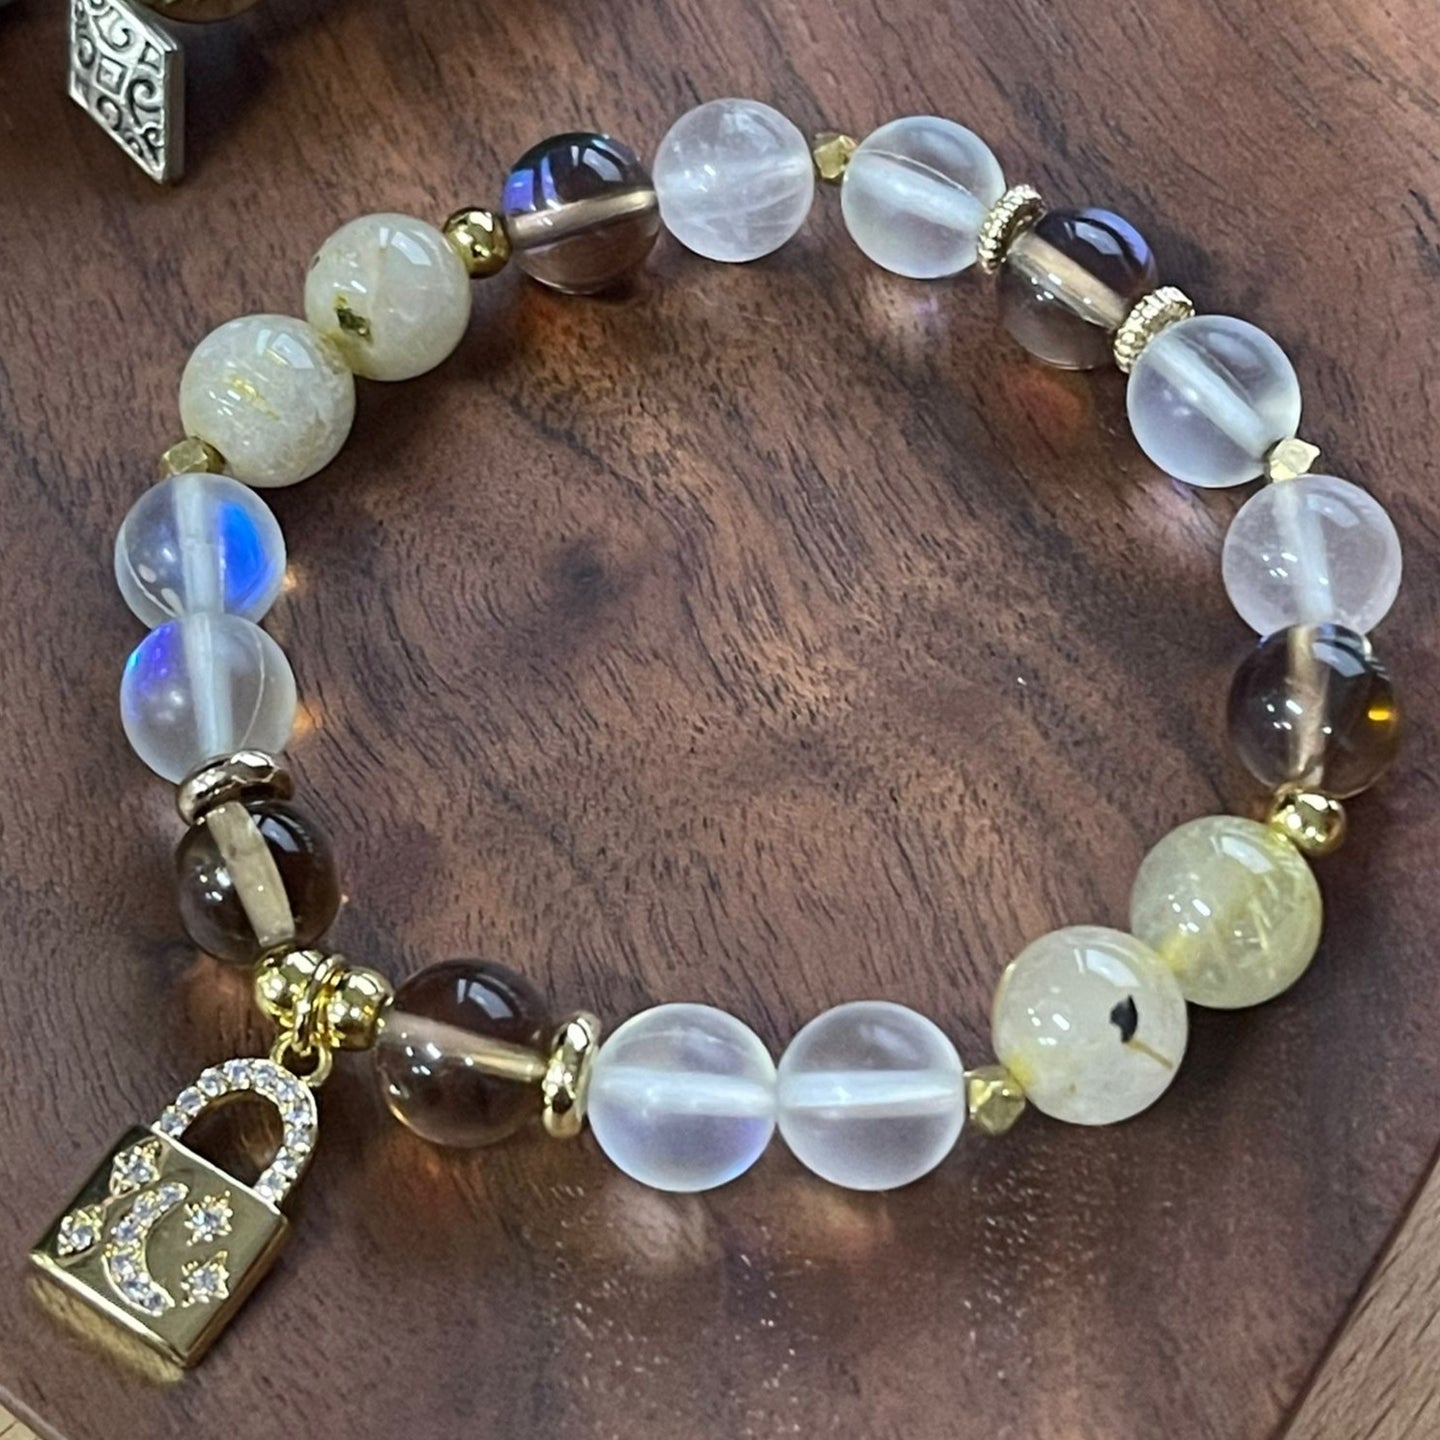 Stone Bracelet with Charm - Tara